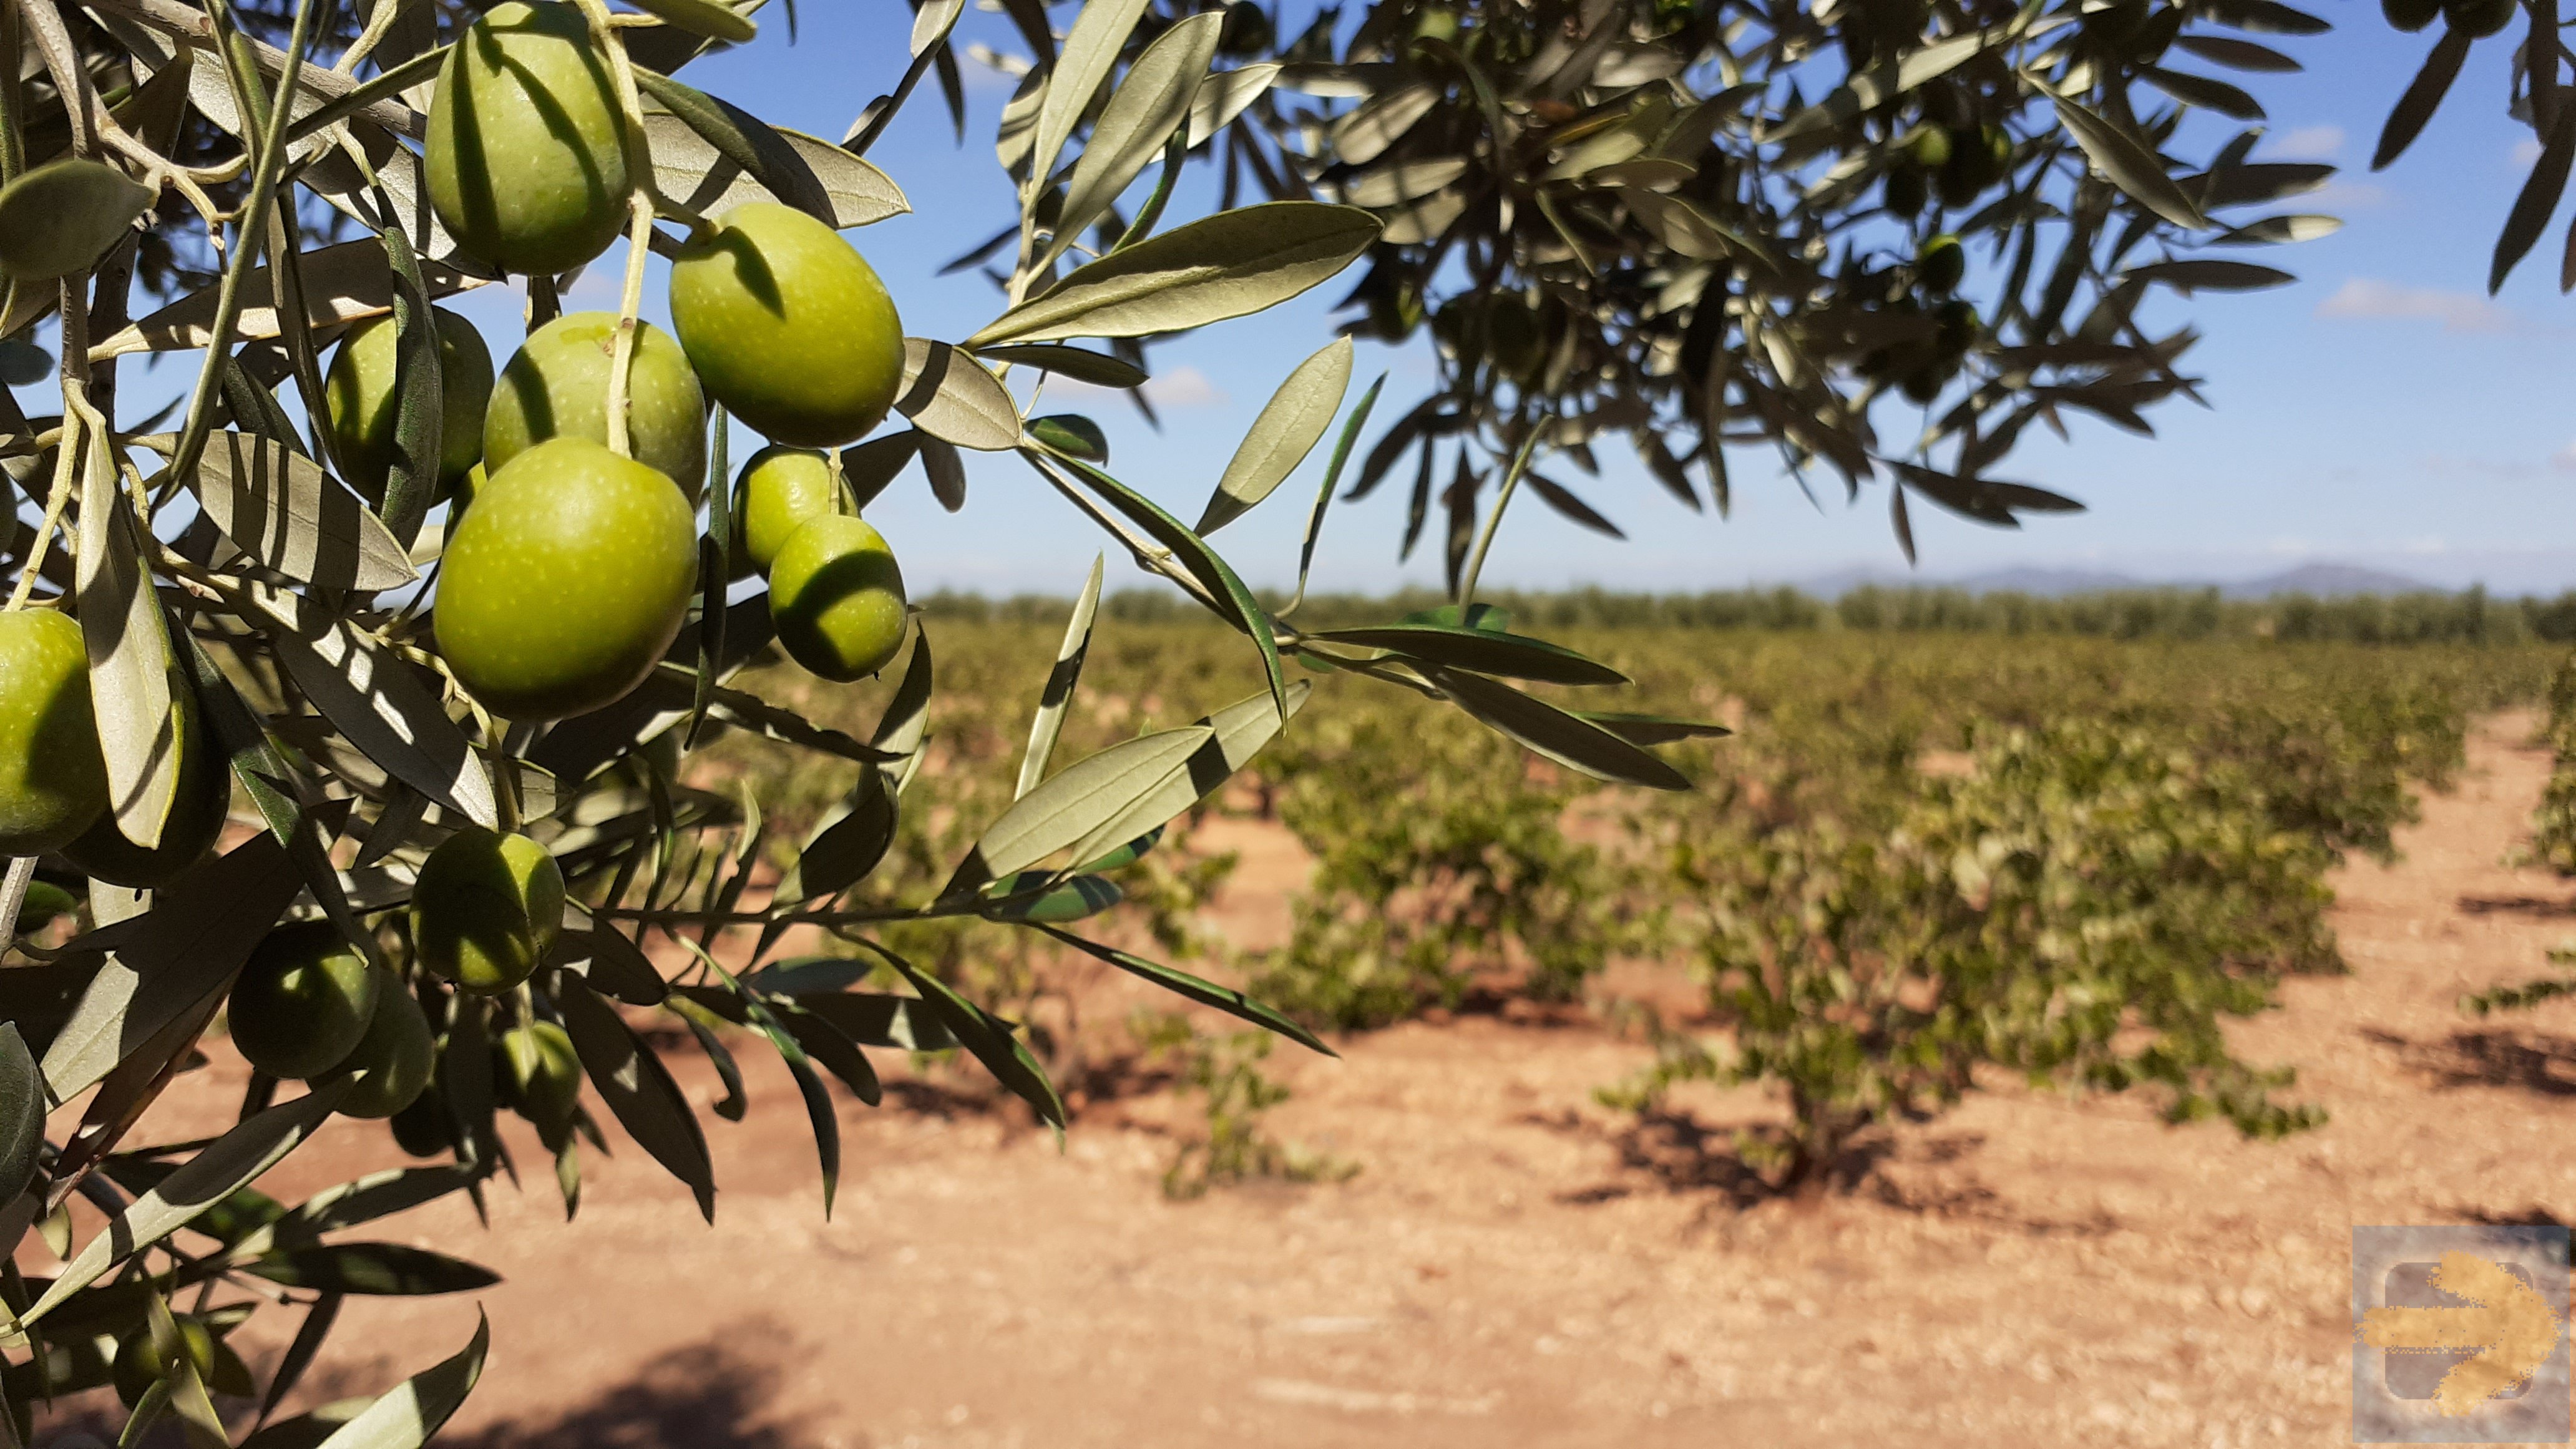 Olives near Villafranca de los Barros. 18 Sept 2021